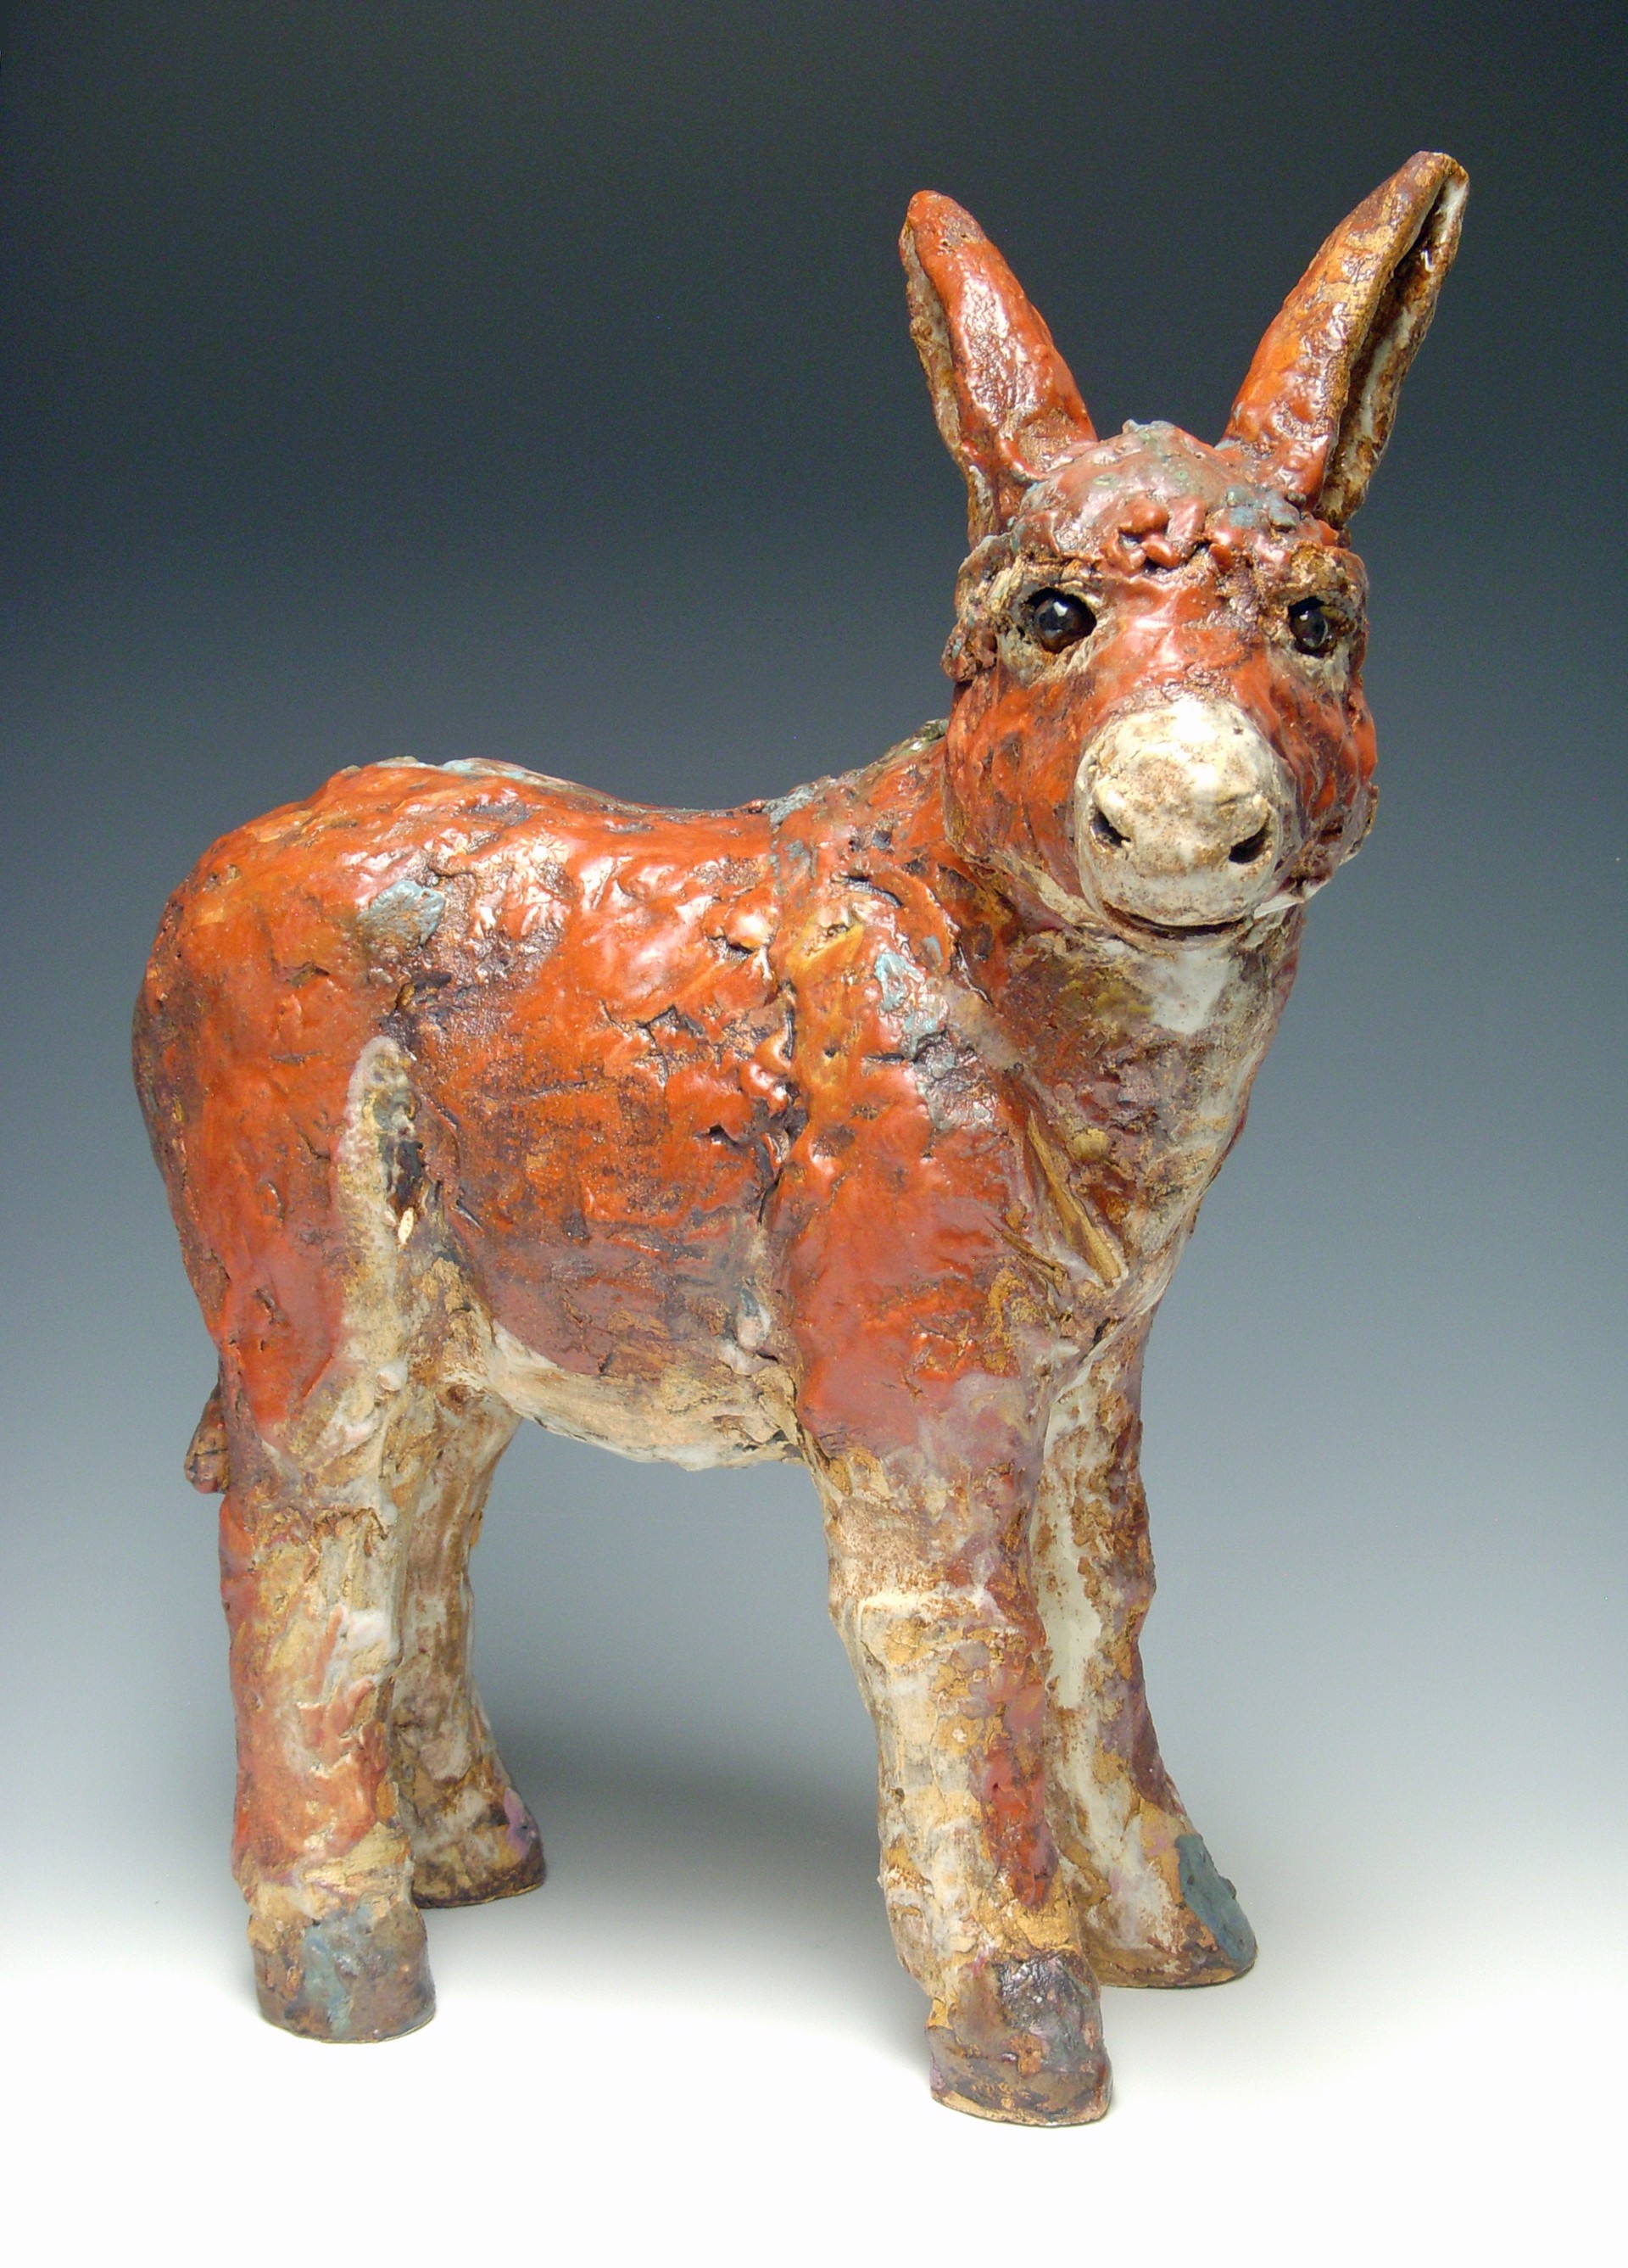 Paprika (burro) by Kari Rives